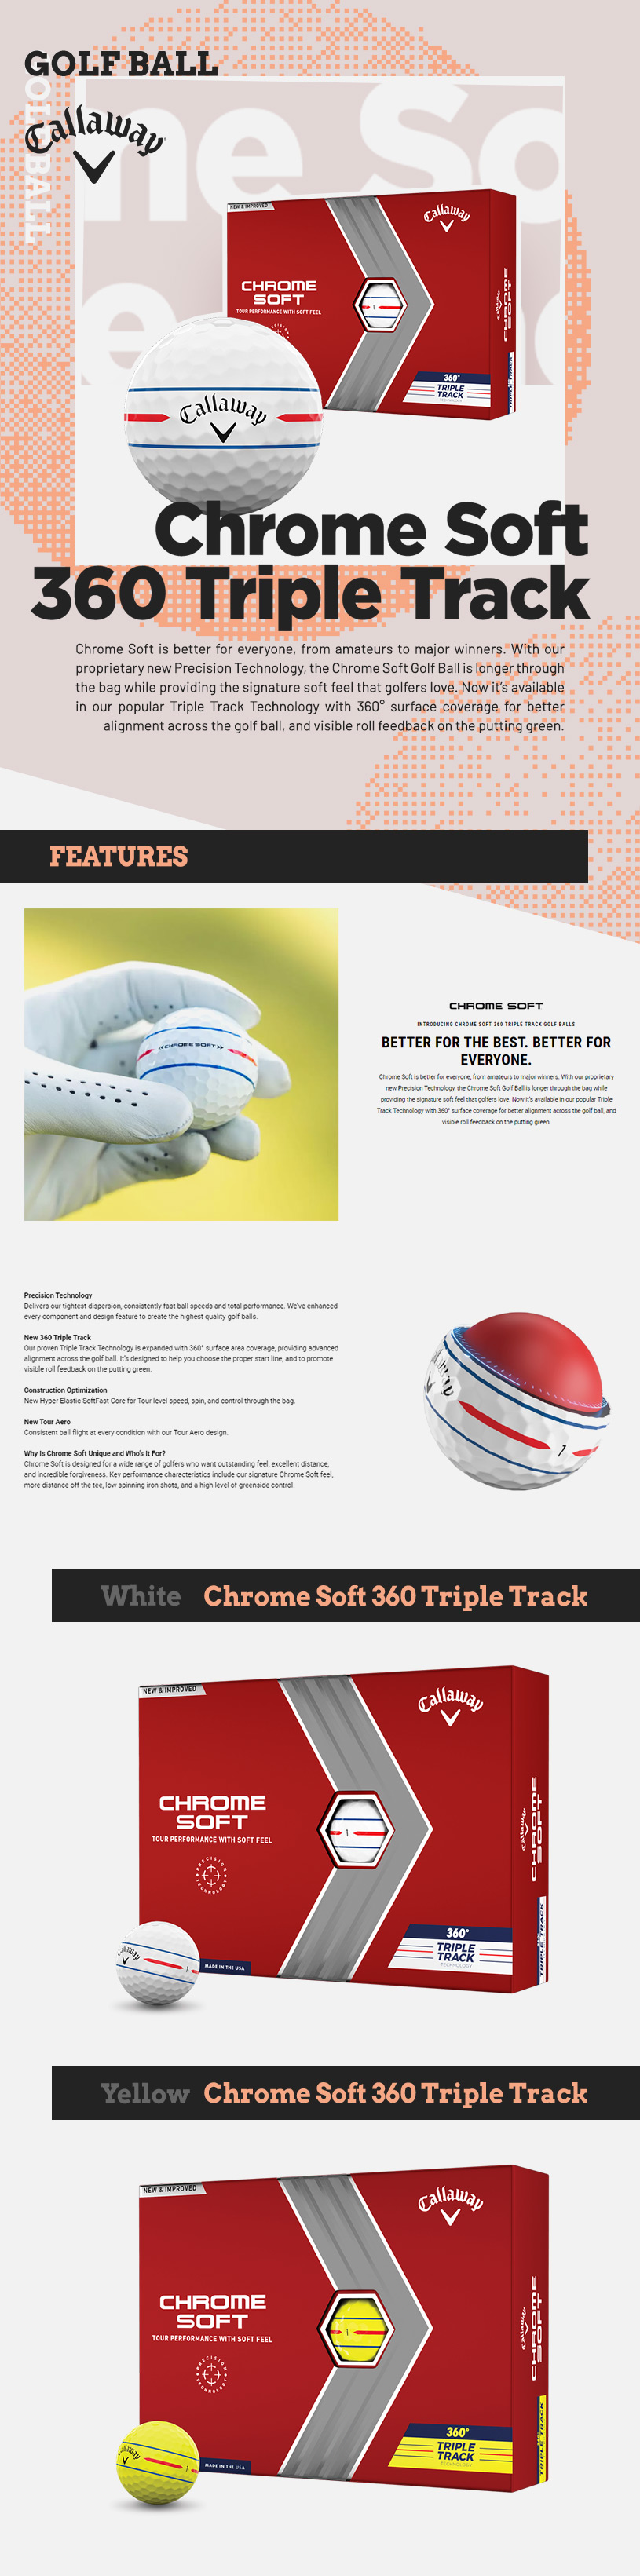 Chrome-Soft-360-Triple-Track_desc.jpg